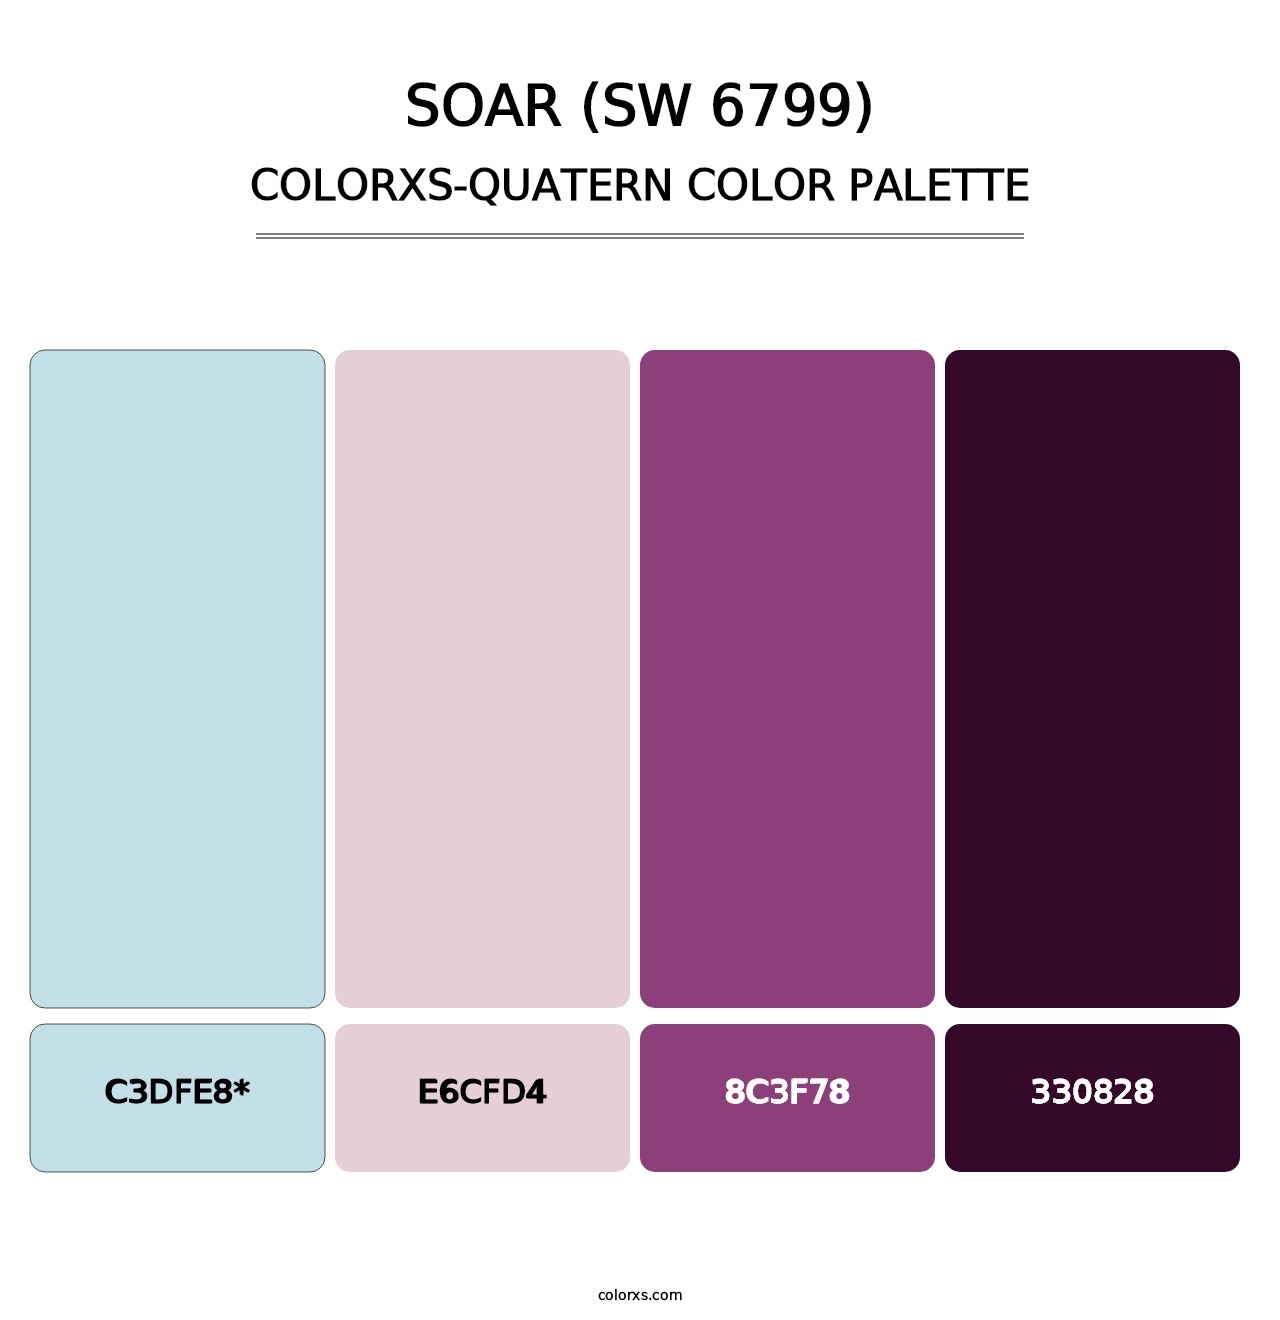 Soar (SW 6799) - Colorxs Quatern Palette